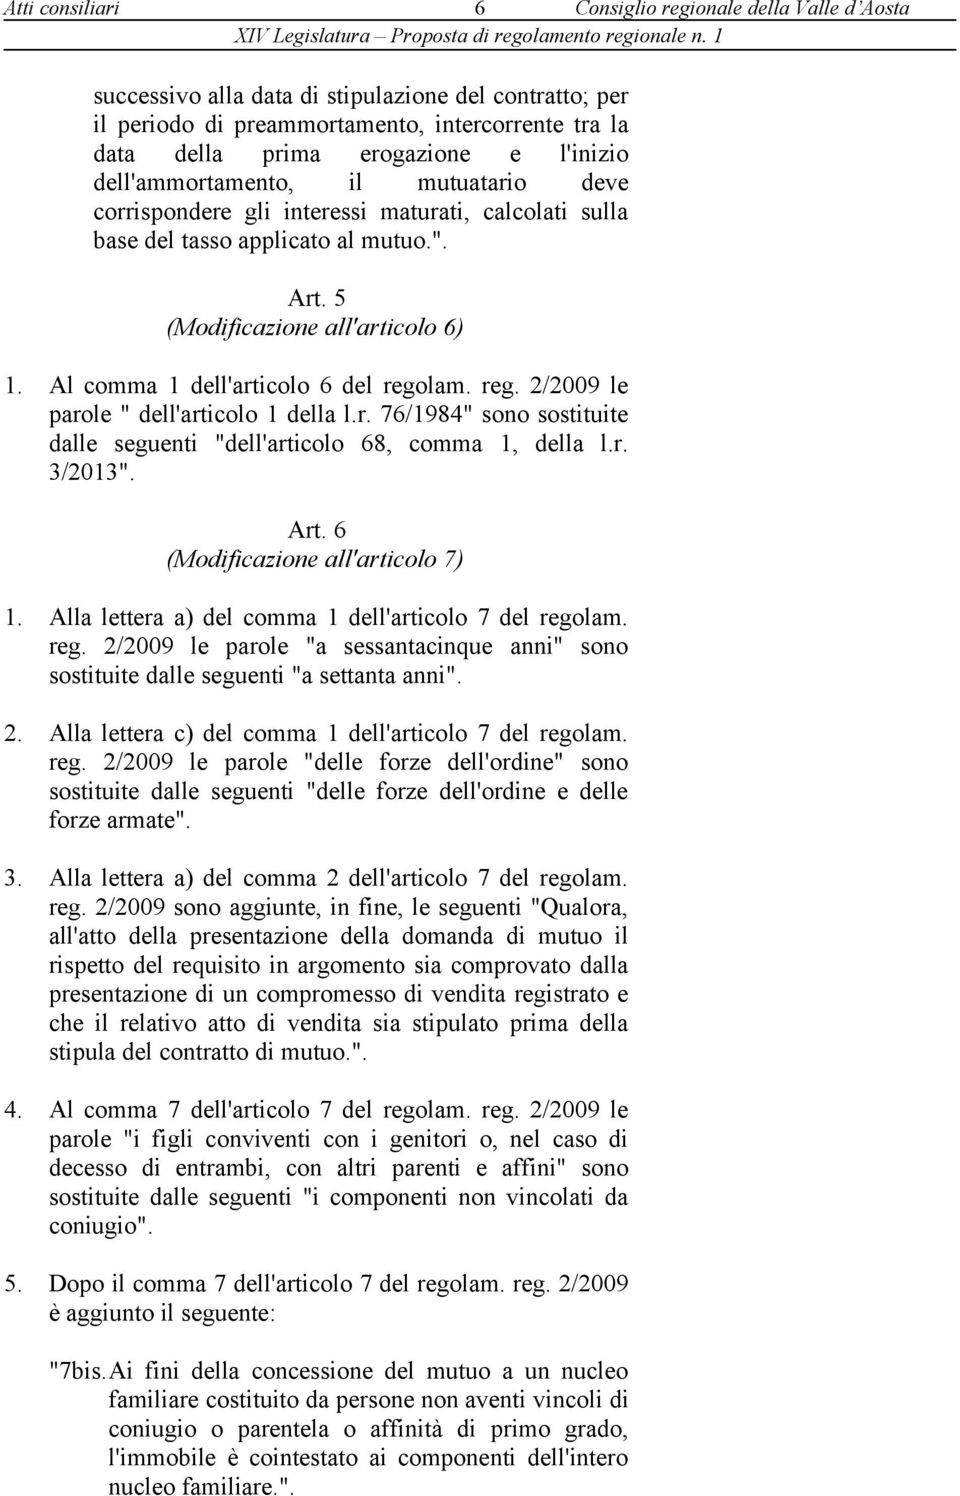 Al comma 1 dell'articolo 6 del regolam. reg. 2/2009 le parole " dell'articolo 1 della l.r. 76/1984" sono sostituite dalle seguenti "dell'articolo 68, comma 1, della l.r. 3/2013". Art.